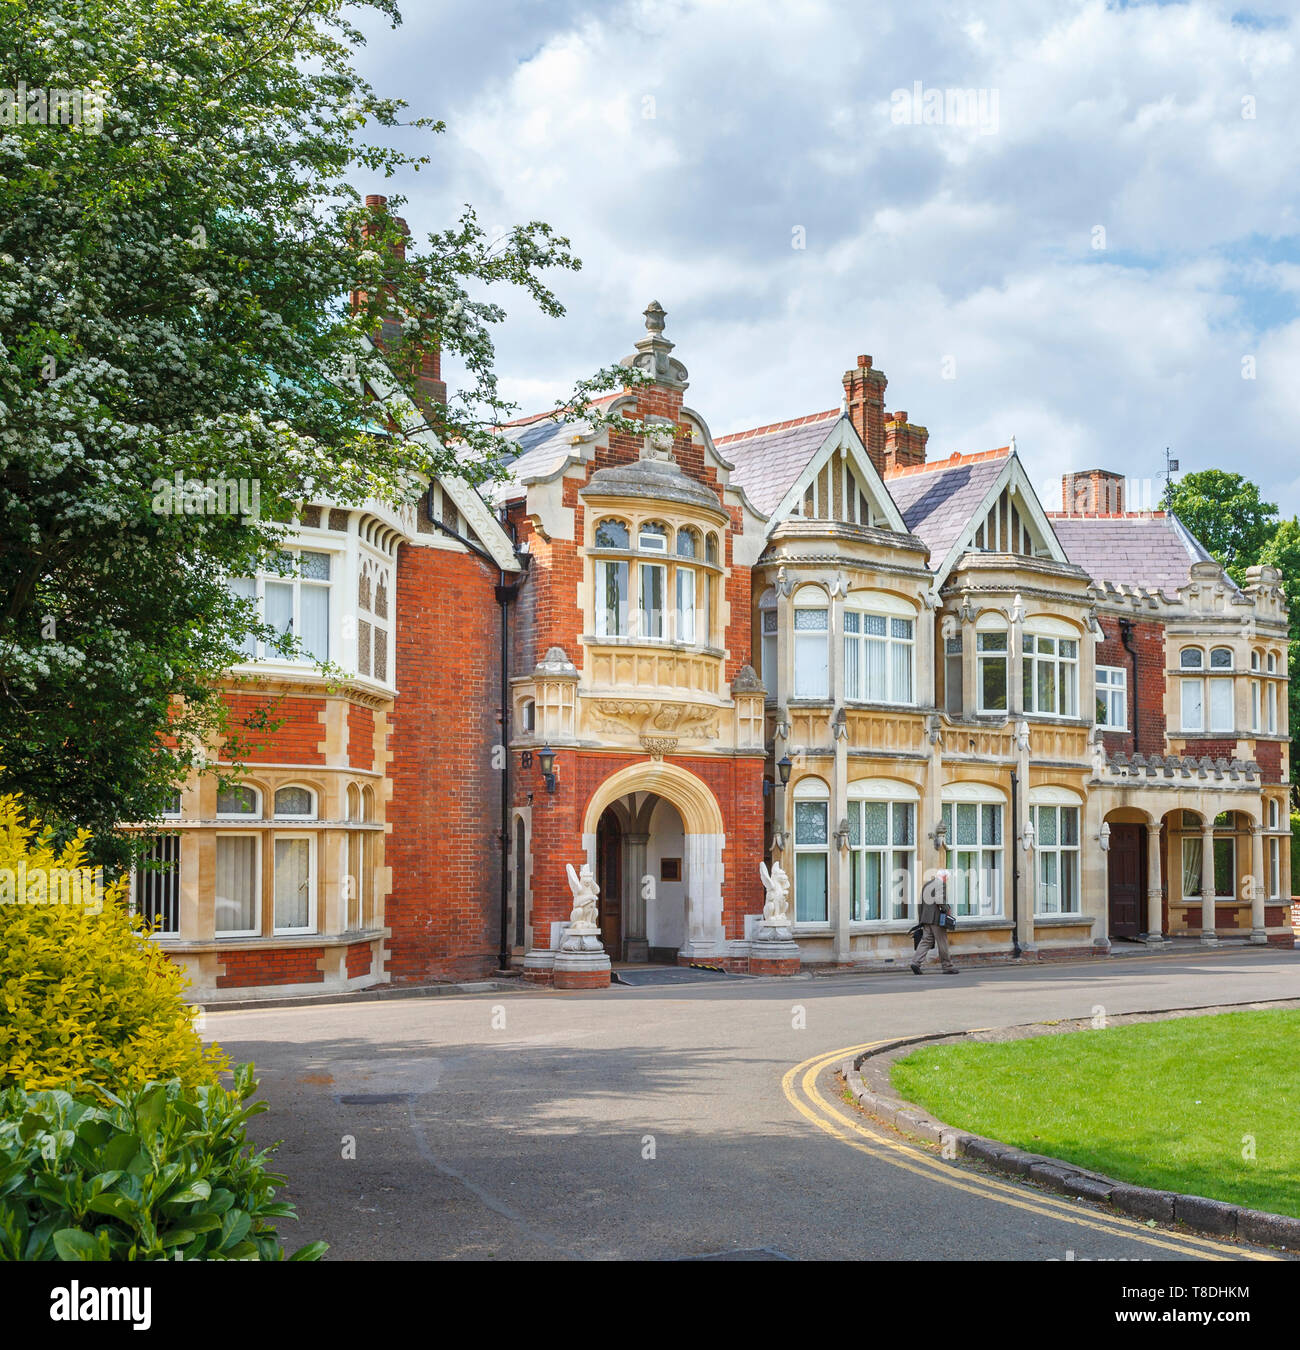 Eingang zum viktorianischen Herrenhaus in Bletchley Park, sobald die top-secret home des Zweiten Weltkriegs Codebreakers, heute ein führender Erbe Attraktion Stockfoto